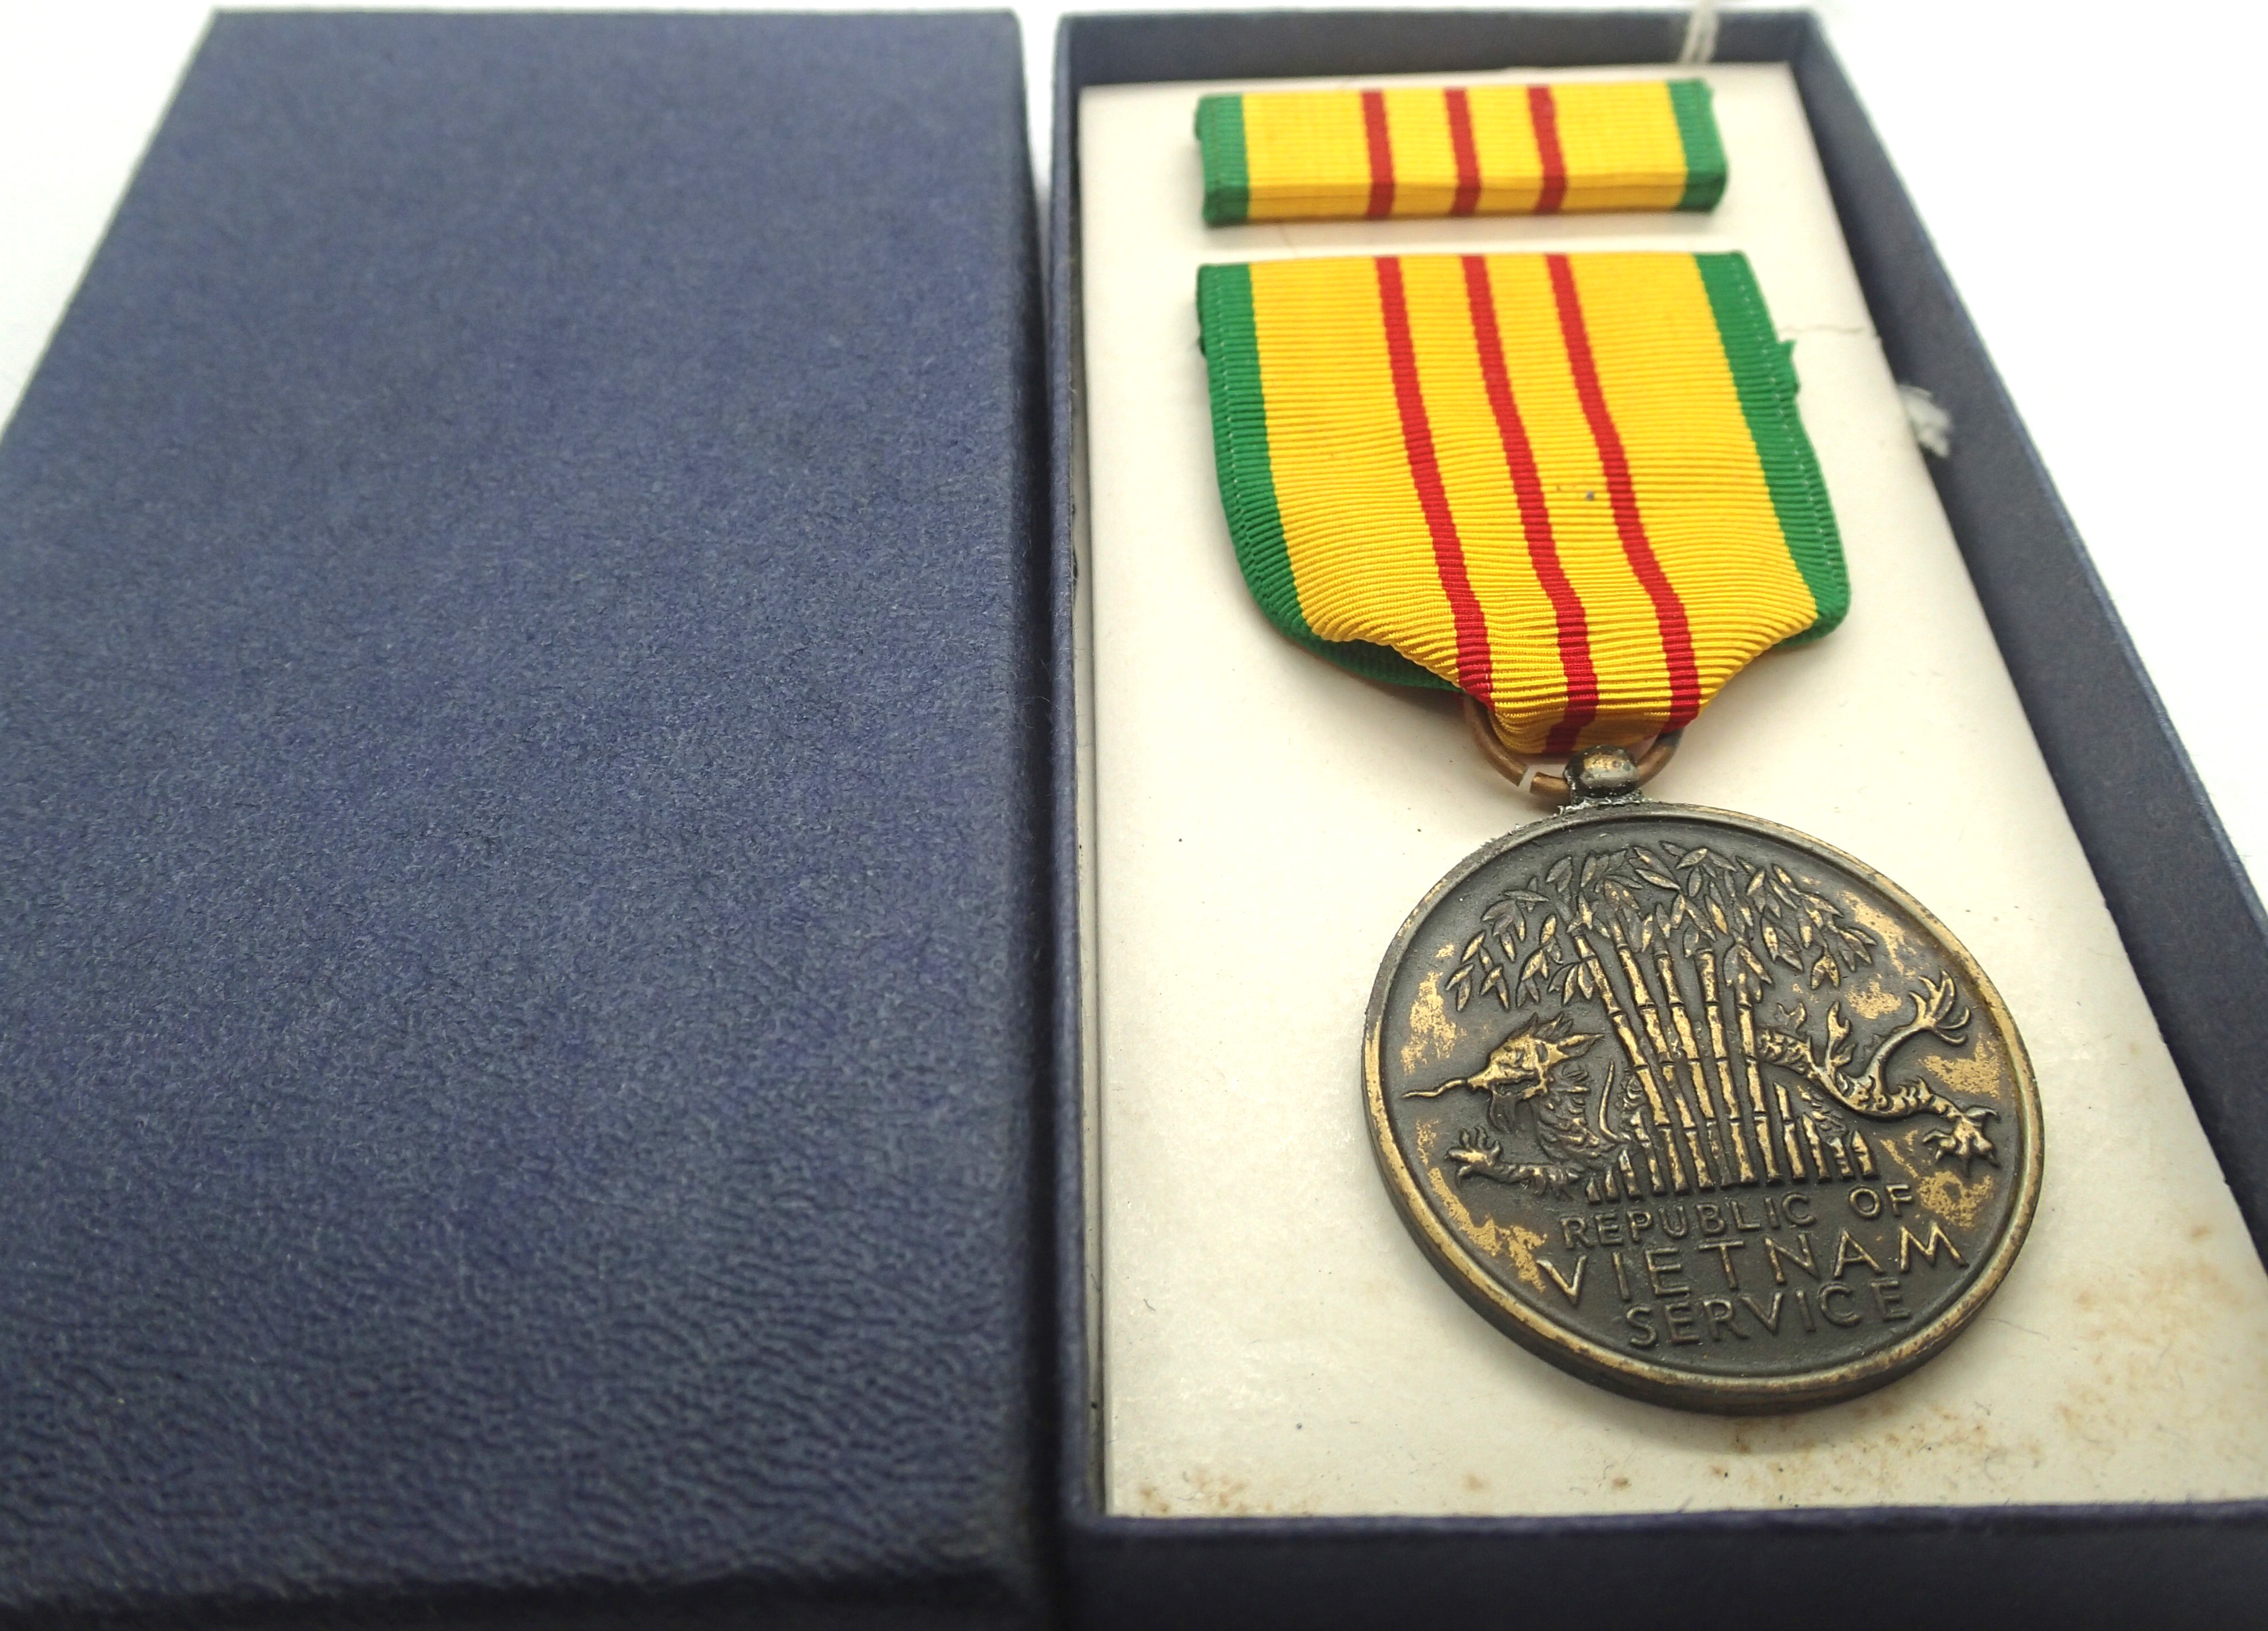 Vietnam War Era. US Vietnam Service Medal in original box. P&P Group 1 (£14+VAT for the first lot